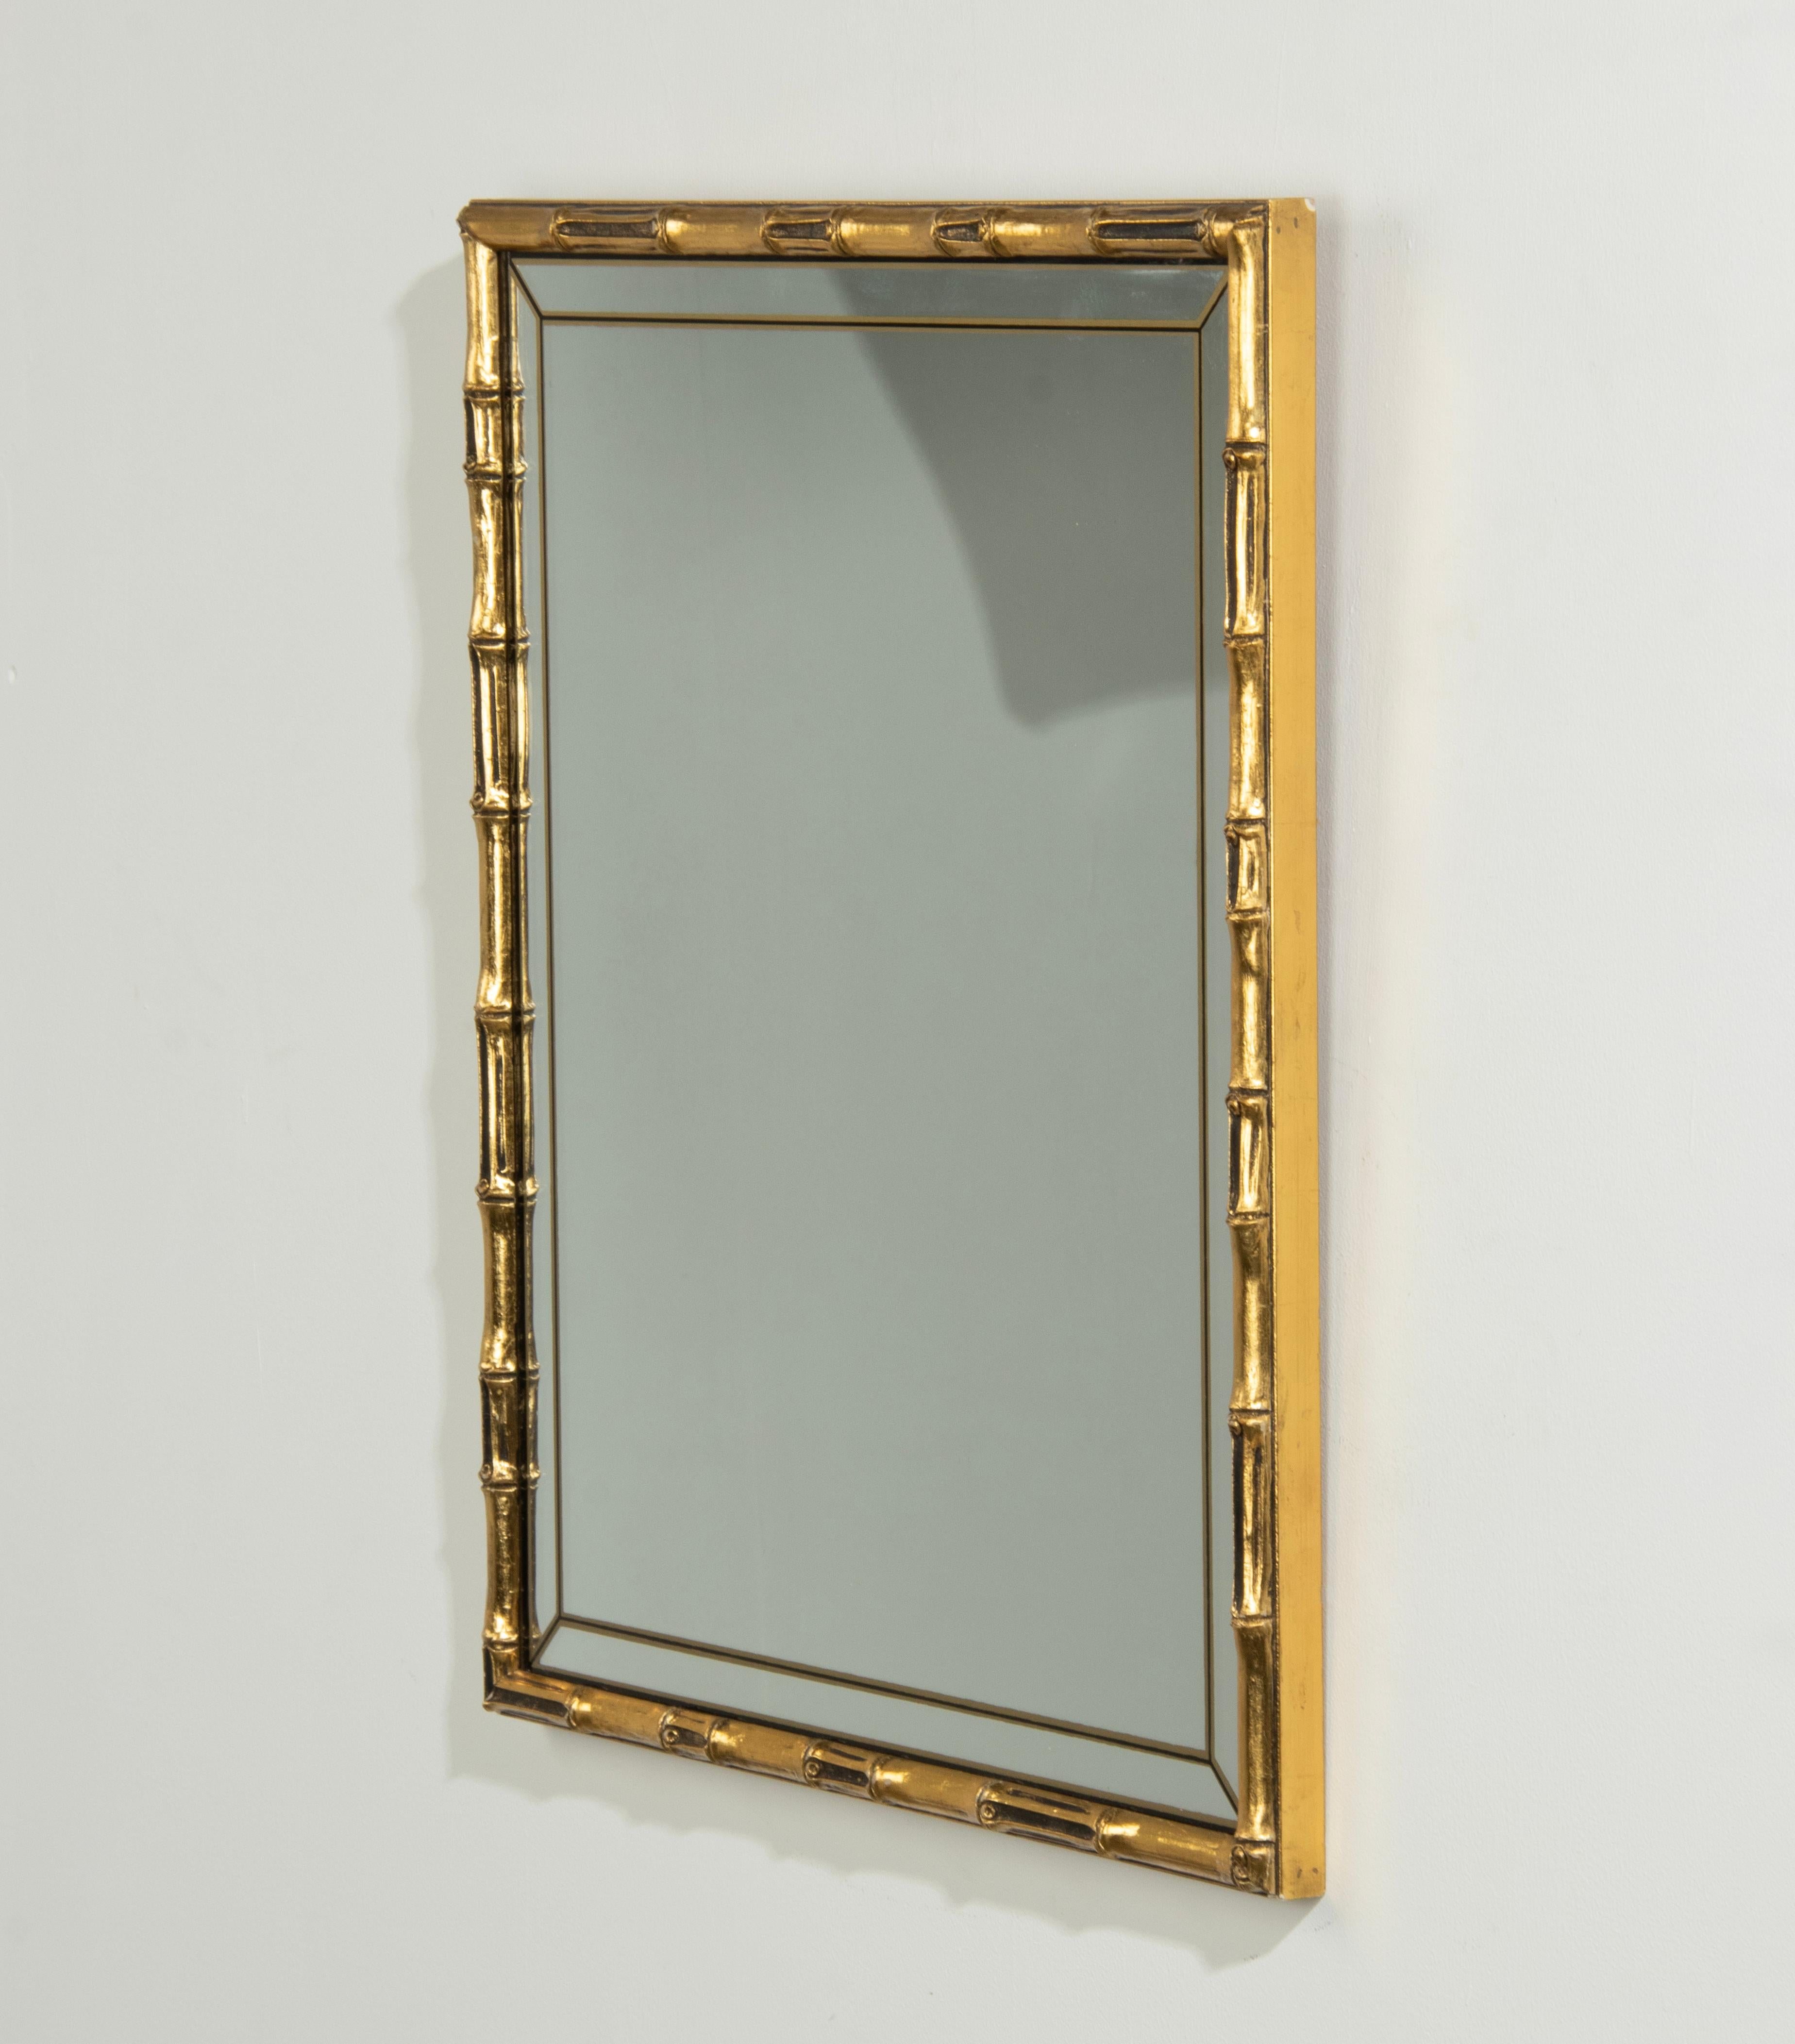 Ein eleganter Vergoldungsspiegel im Hollywood-Regency-Stil. Der Rahmen aus Bambusimitat ist aus geformtem Holz mit einer vergoldeten Patina. Das Spiegelglas hat ein dekoratives, abgeschrägtes Glas aus handbedrucktem Schwarz mit Goldstreifen.